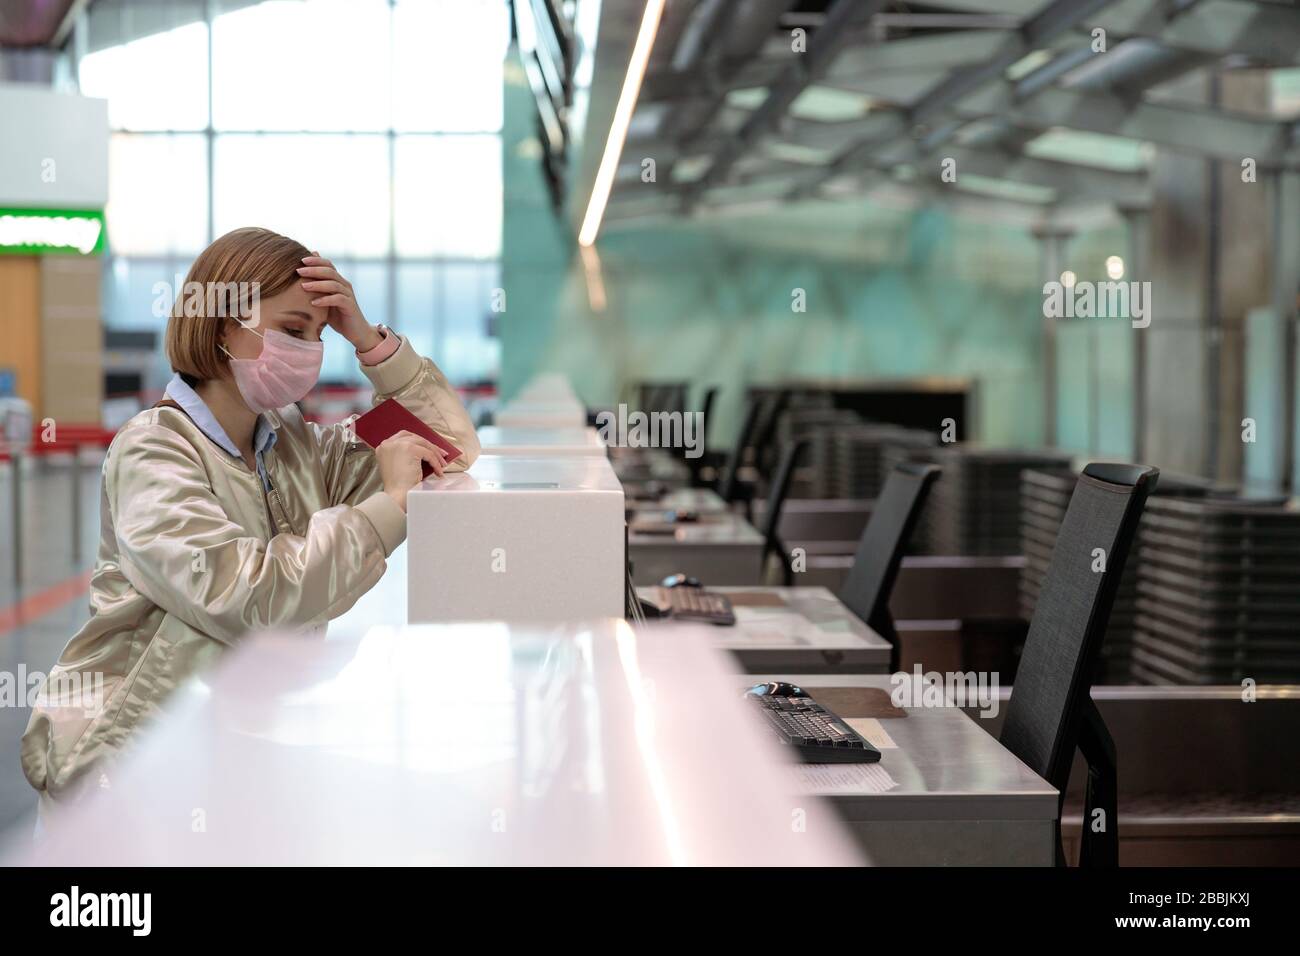 Mujer con equipaje con cancelación de vuelo, se encuentra en mostradores de facturación vacíos en la terminal del aeropuerto debido a la pandemia de coronavirus/brote de Covid-19 trave Foto de stock